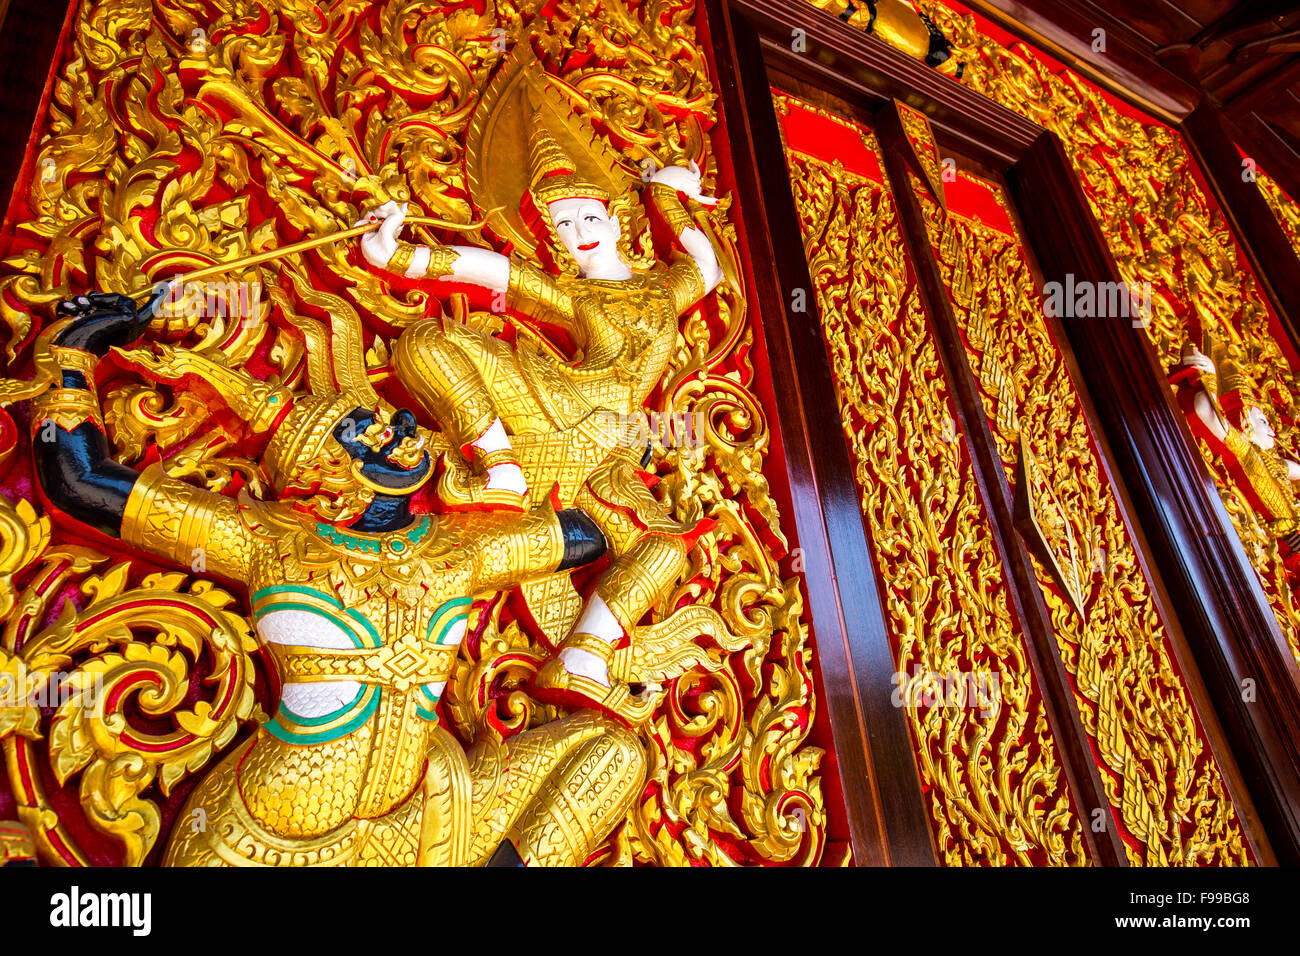 Talla de madera del Ramayana épico sobre la pared del Templo - Samut Songkhram, Tailandia Foto de stock